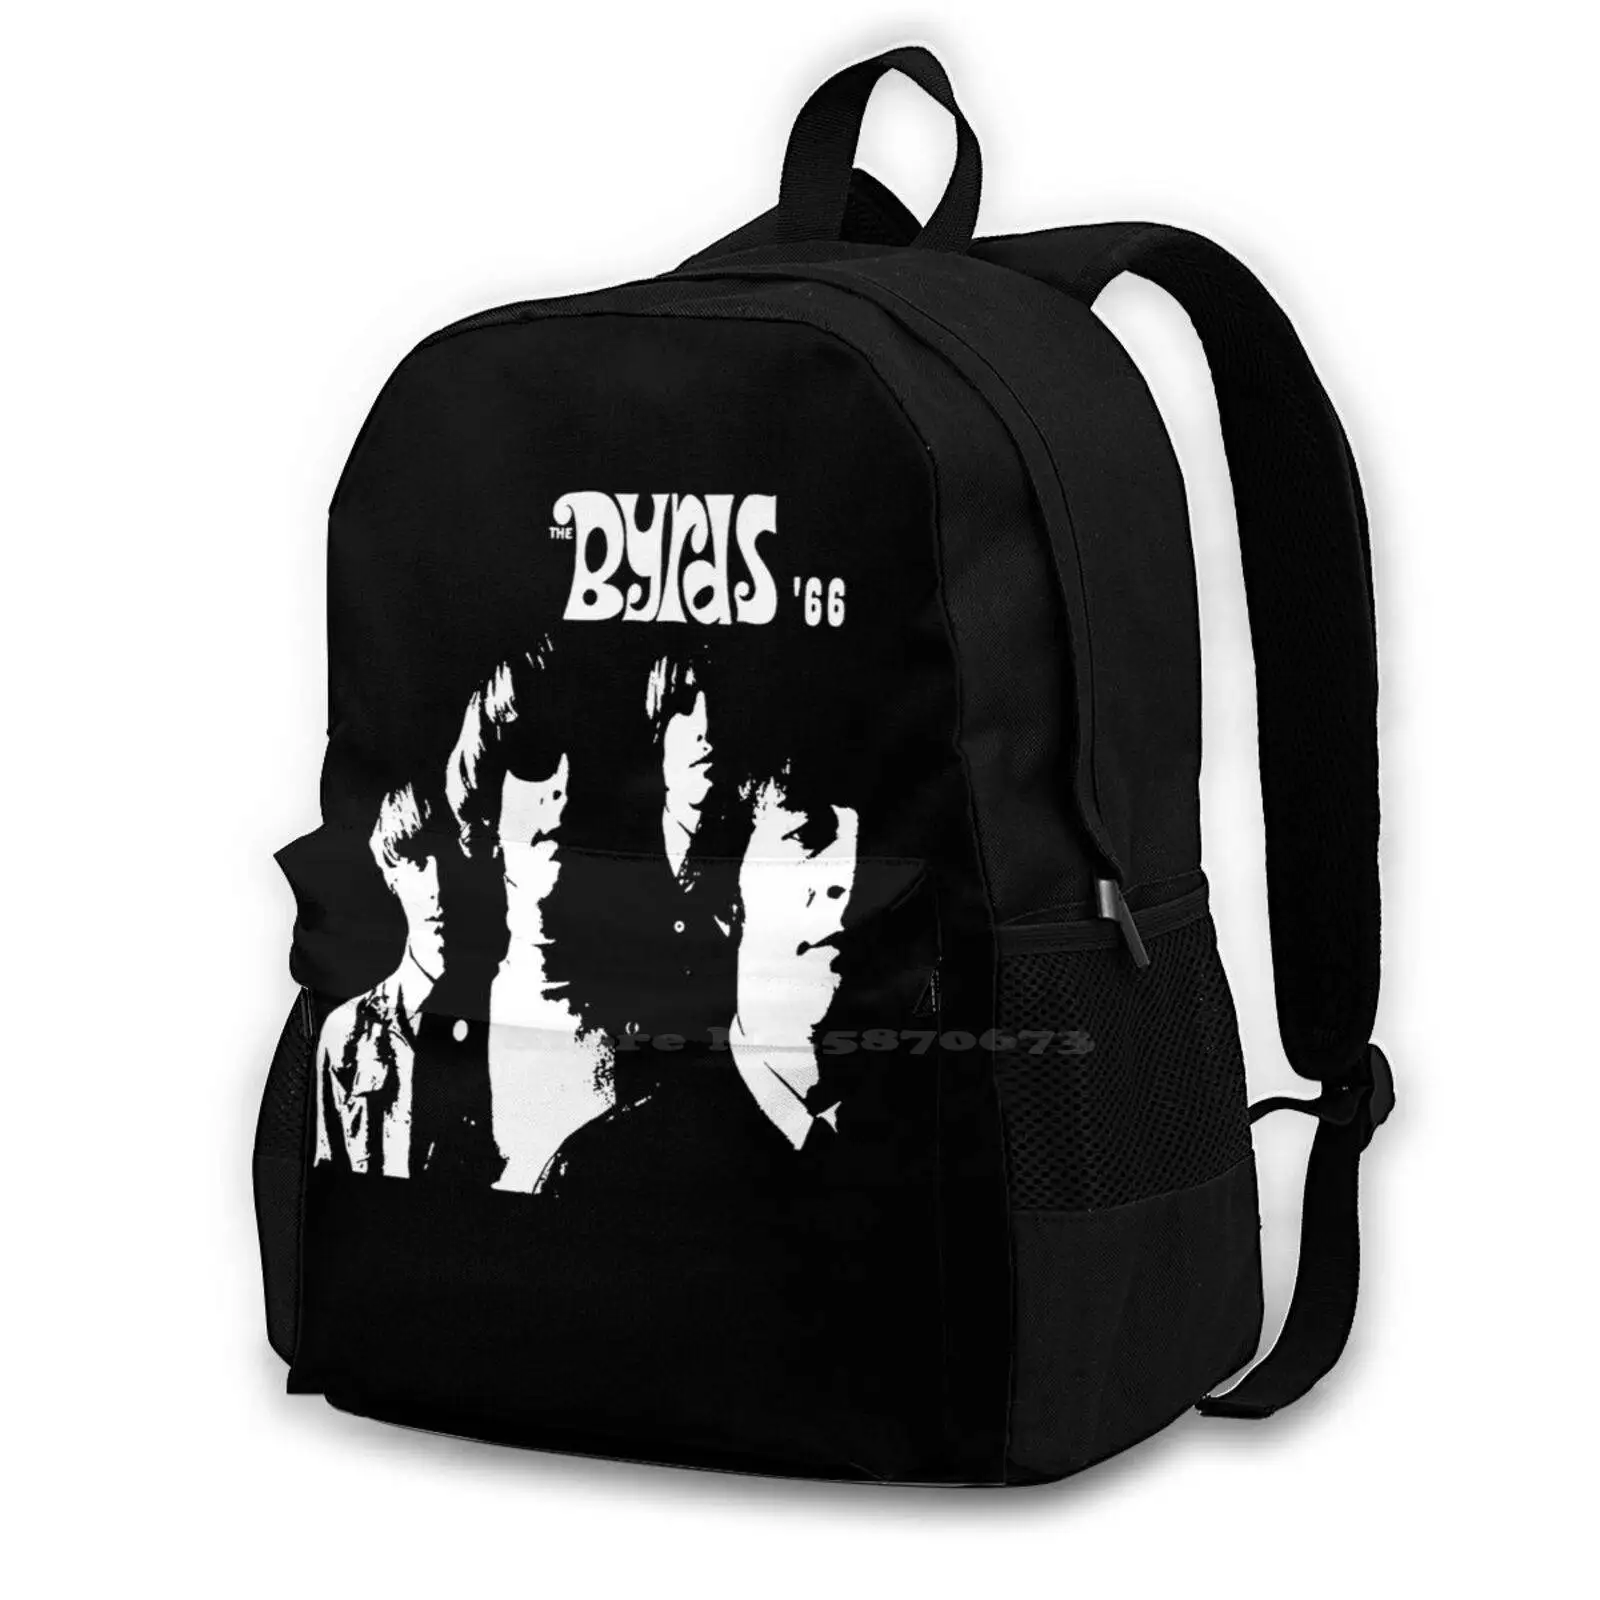 

Модный Дорожный рюкзак The Byrds с американской рок-группой, школьный рюкзак для ноутбука, сумка The Byrds Buffalo, Спрингфилд, Kinks creверс